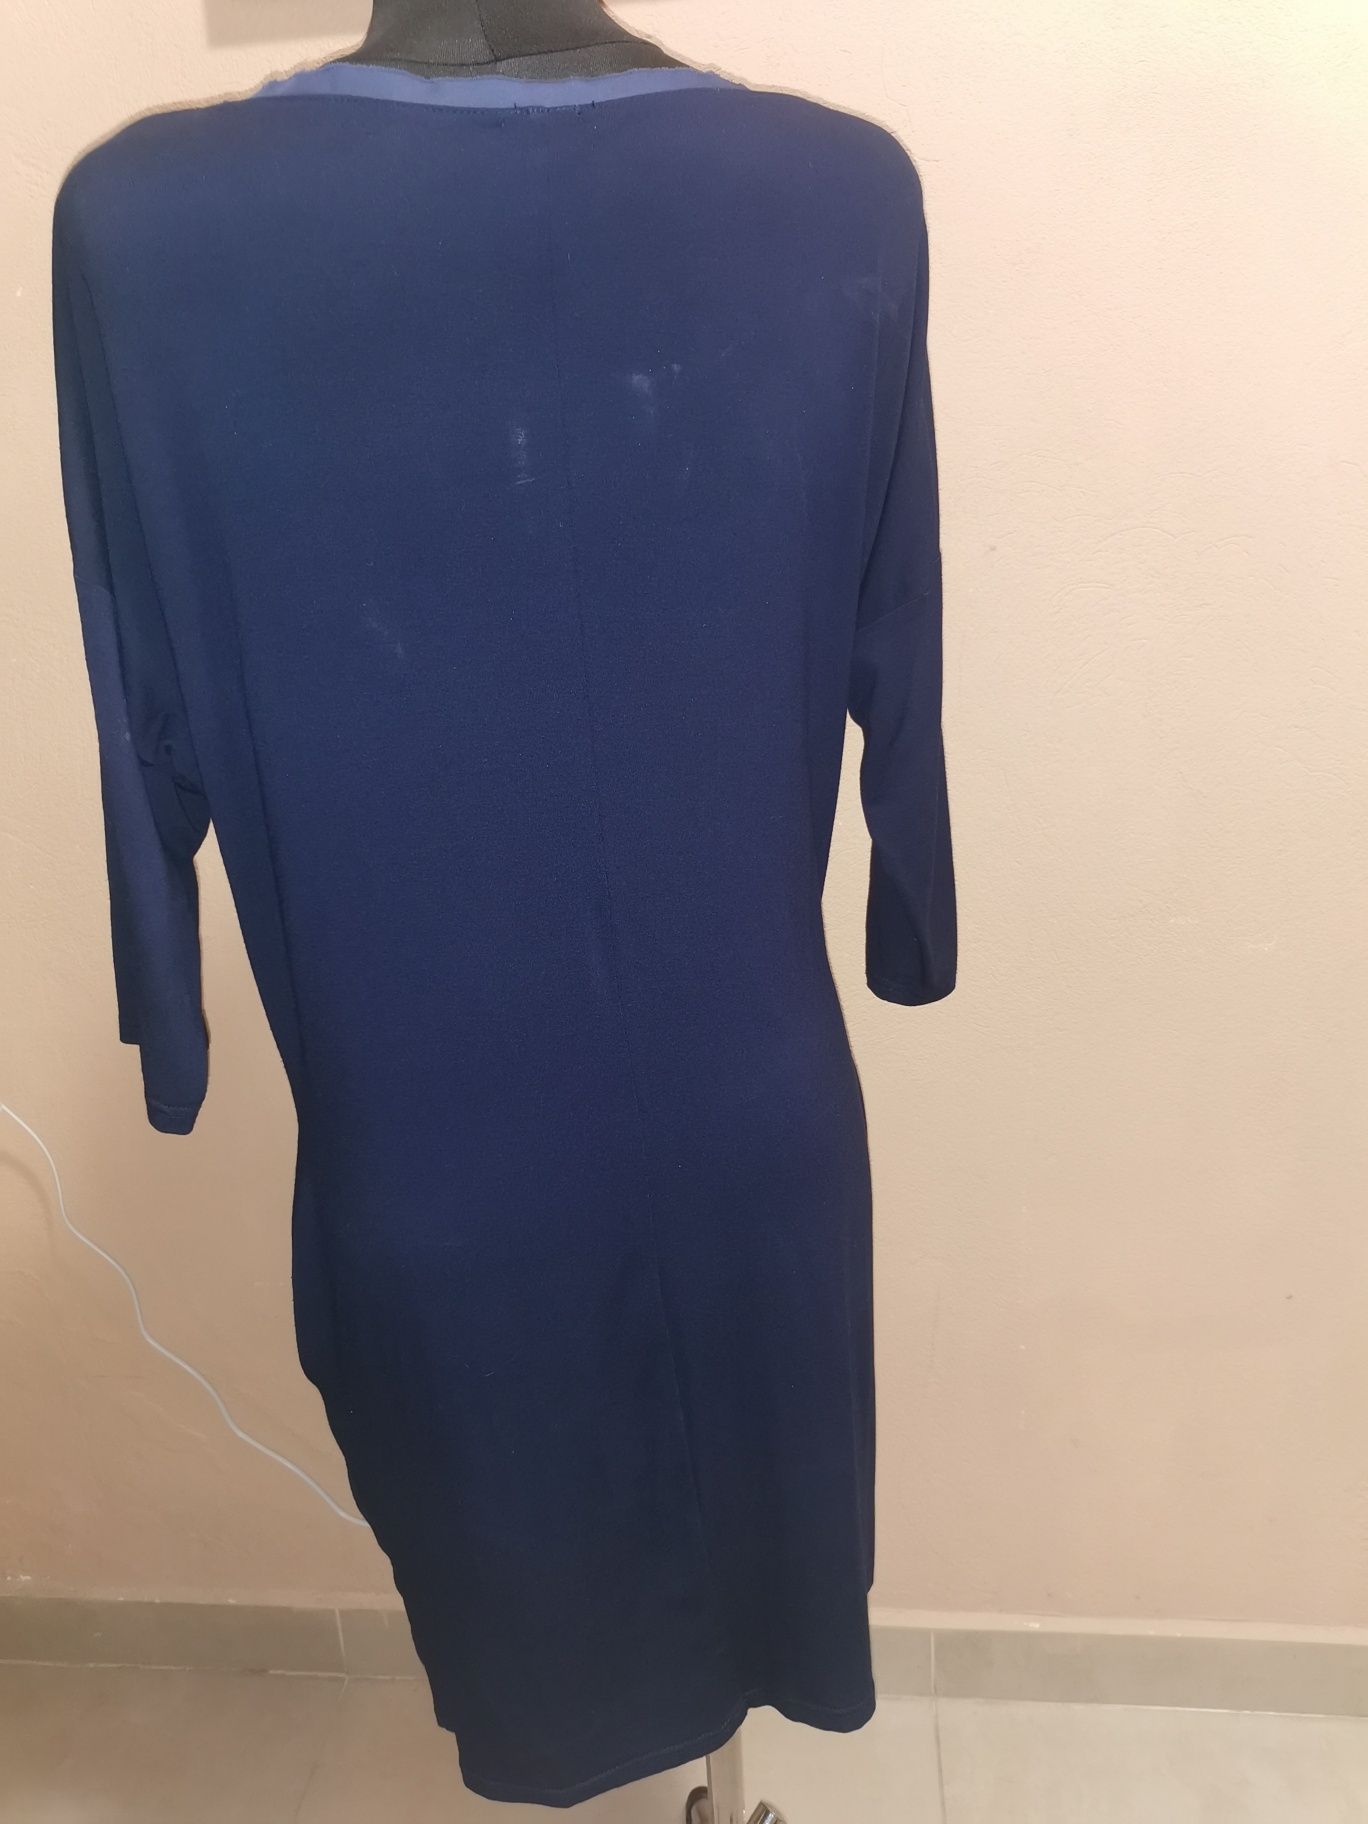 Granatowa dresowa sukienka zakrywającą niedoskonałości 36 38